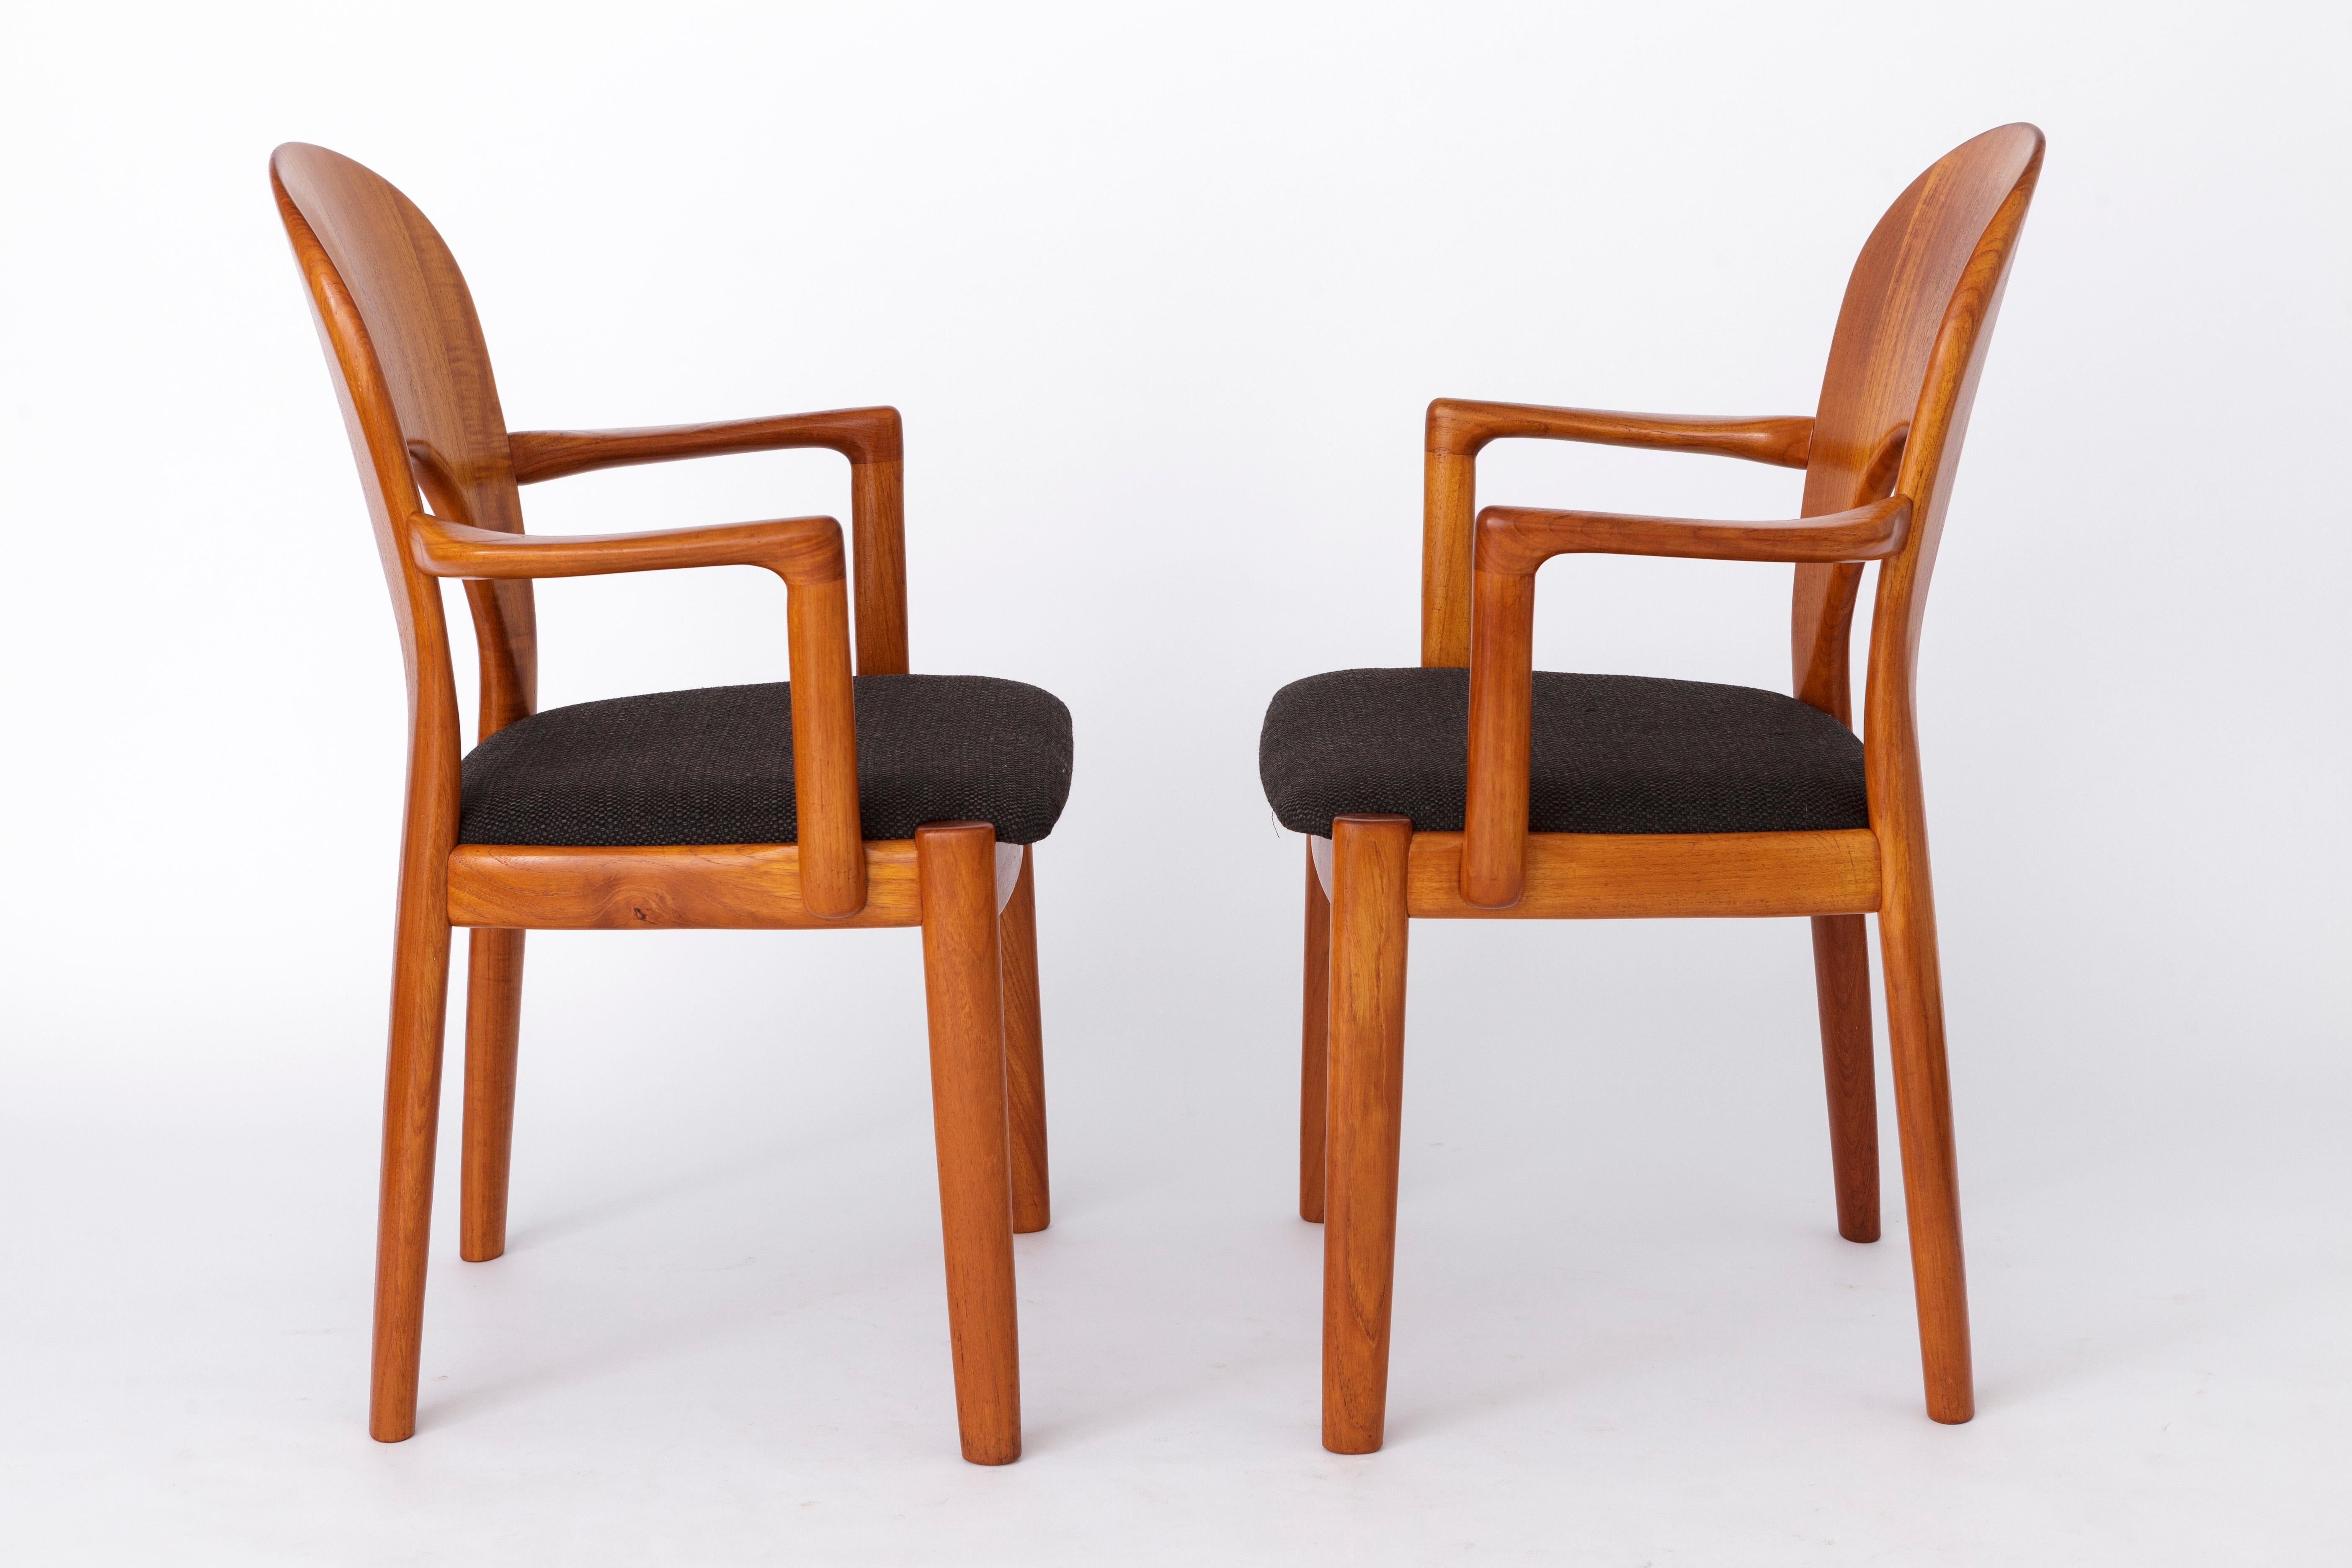 2 Sillones de Niels Koefoed, Dinamarca. 
Periodo de producción: aprox. años 60-70
El precio indicado es por un par. En total, 4 sillas (2 pares) disponibles. 

Robusto armazón de madera de teca. Reacondicionado y engrasado. 
Fundas de asiento